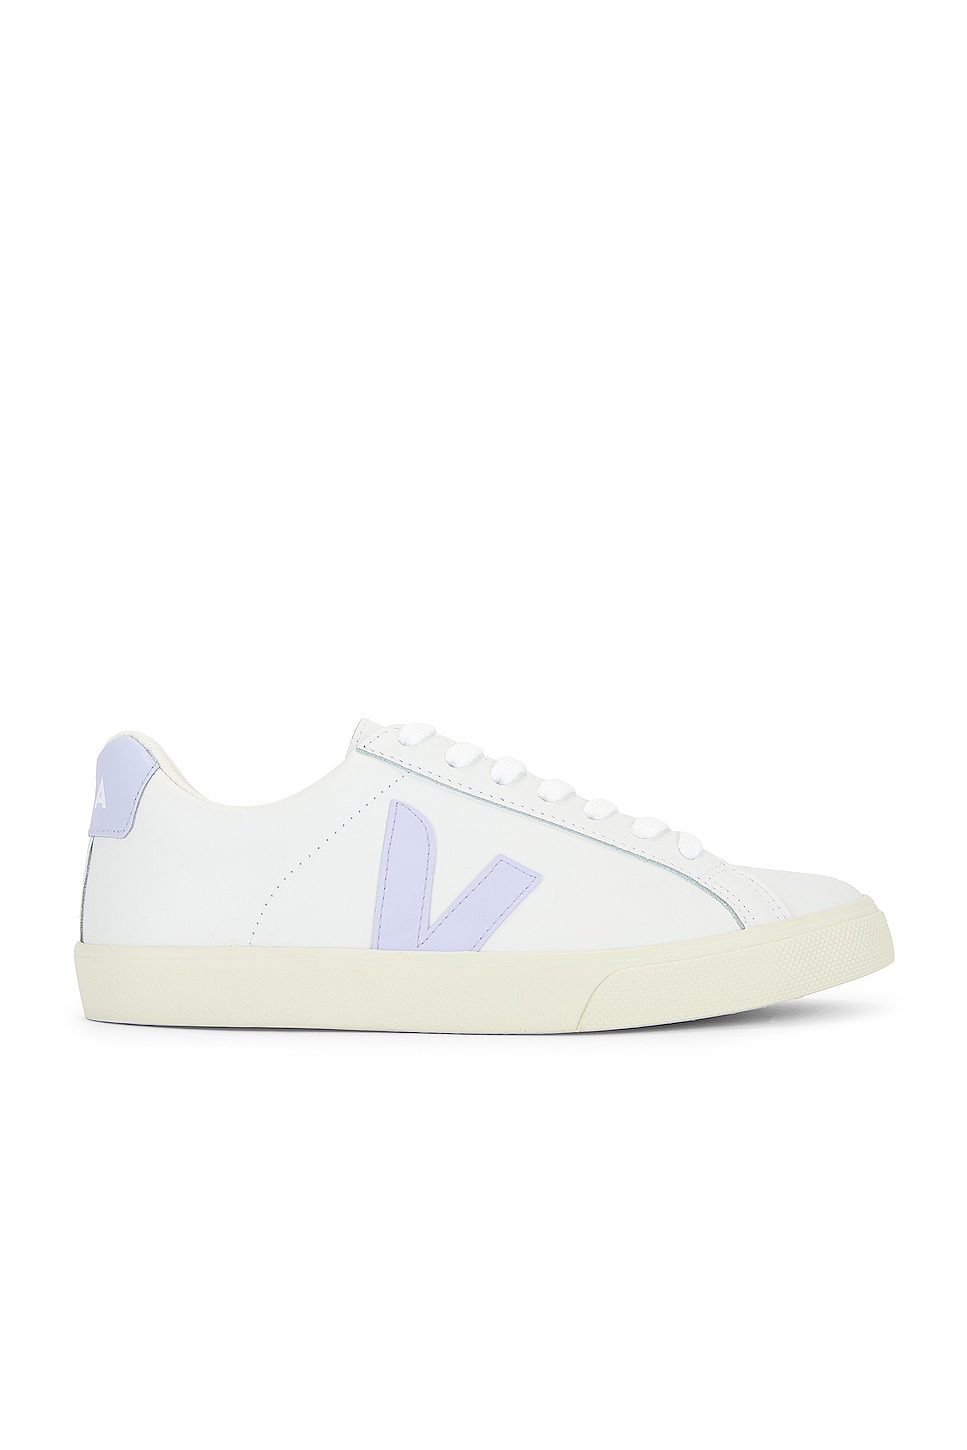 Image 1 of Veja Esplar Sneaker in Extra White & Swam